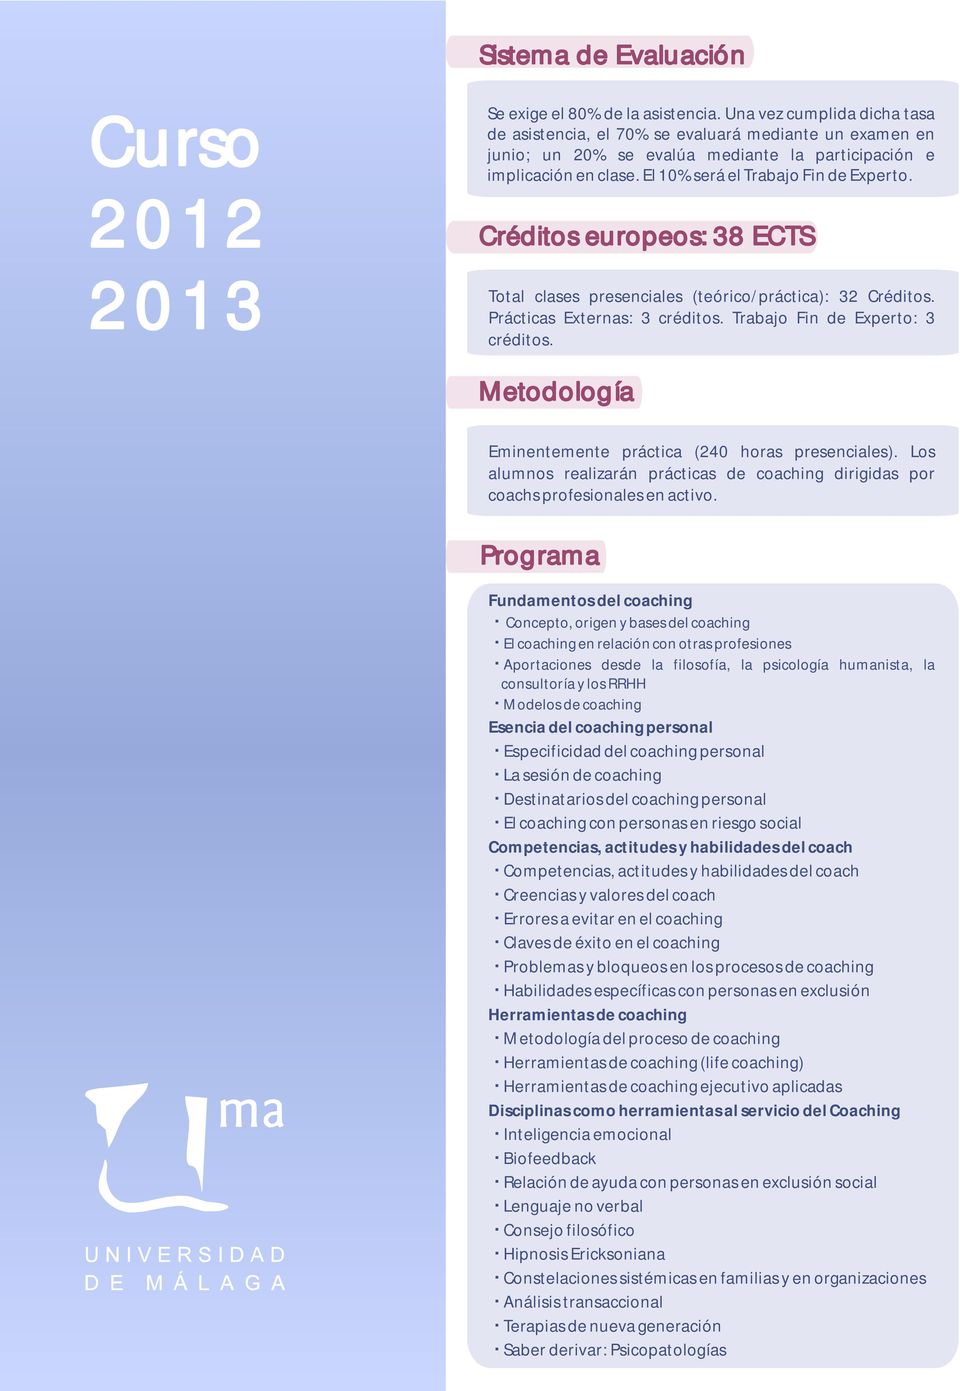 Créditos europeos: 38 ECTS Total clases presenciales (teórico/práctica): 32 Créditos. Prácticas Externas: 3 créditos. Trabajo Fin de Experto: 3 créditos.